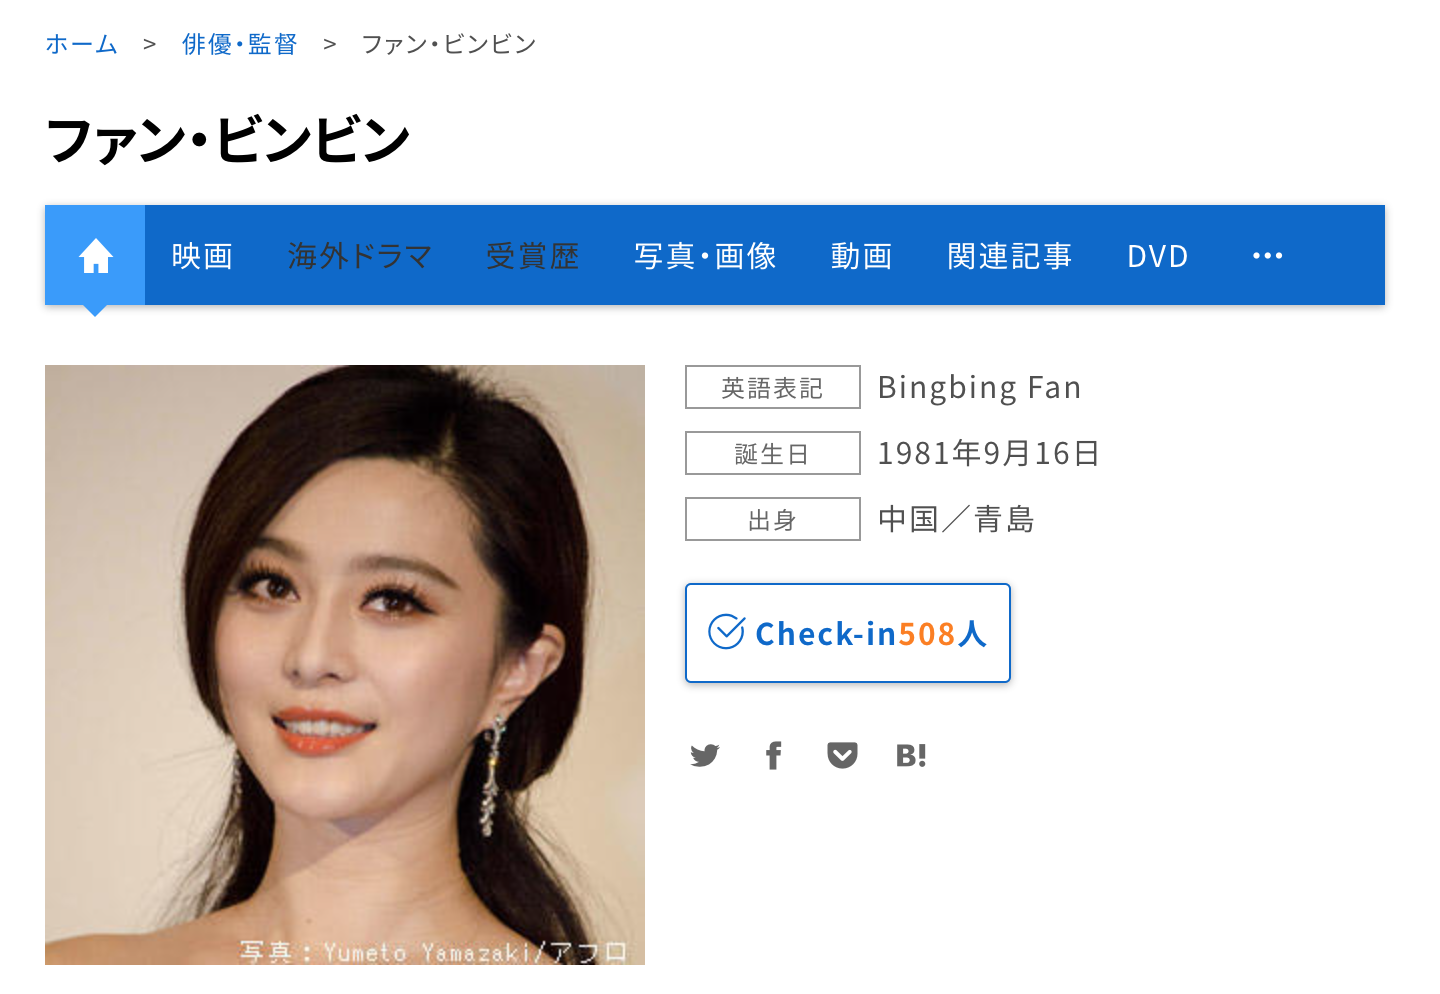 Japanese transliteration of Chinese celebrity ファン・ビンビン without Kanji